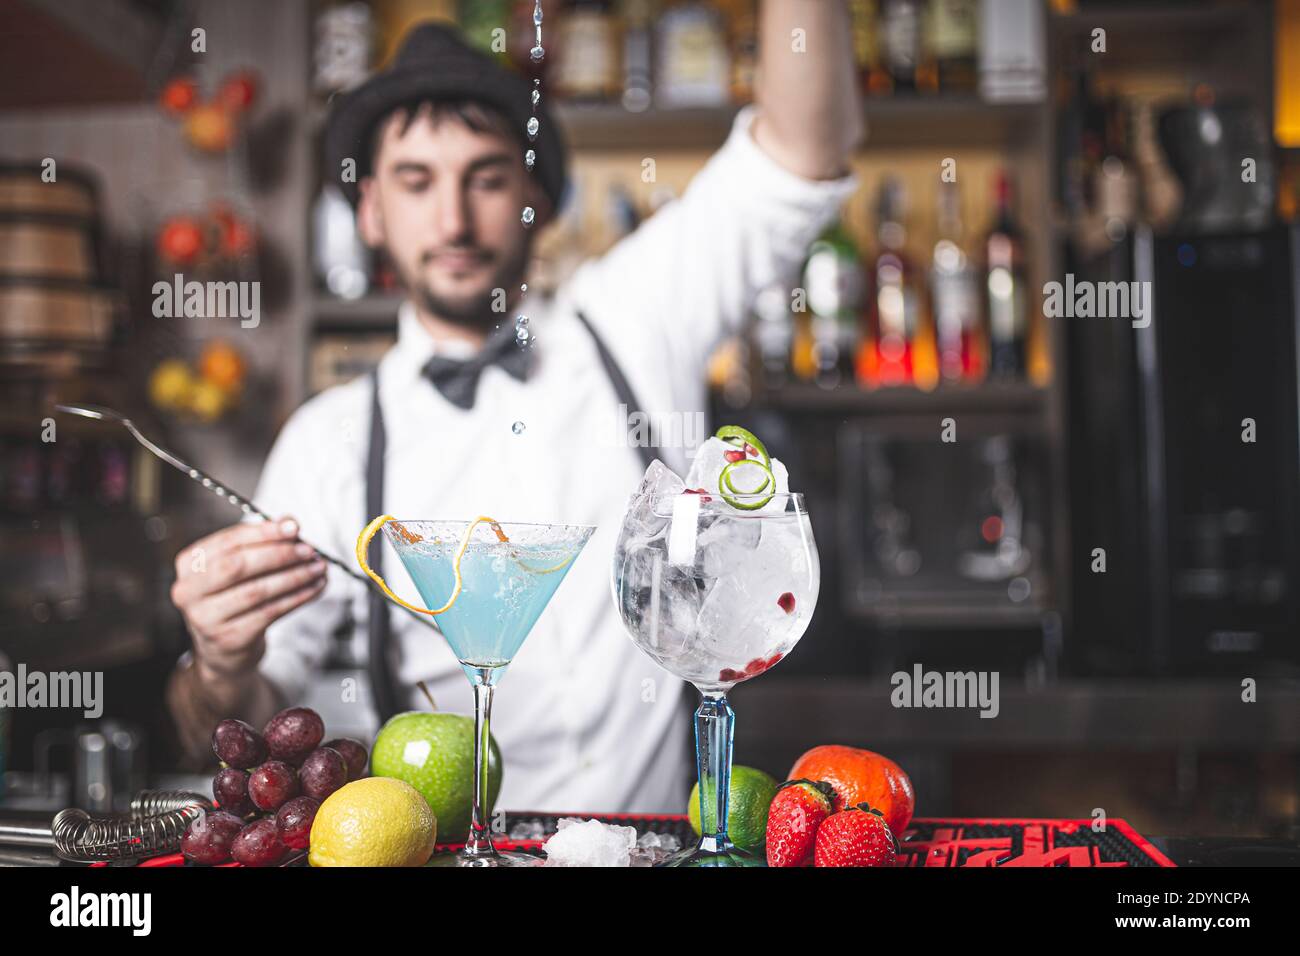 Der erfahrene Barkeeper macht im Nachtclub einen Cocktail mit Hut und Fliege. Tropfen fallen in den Becher. Stockfoto